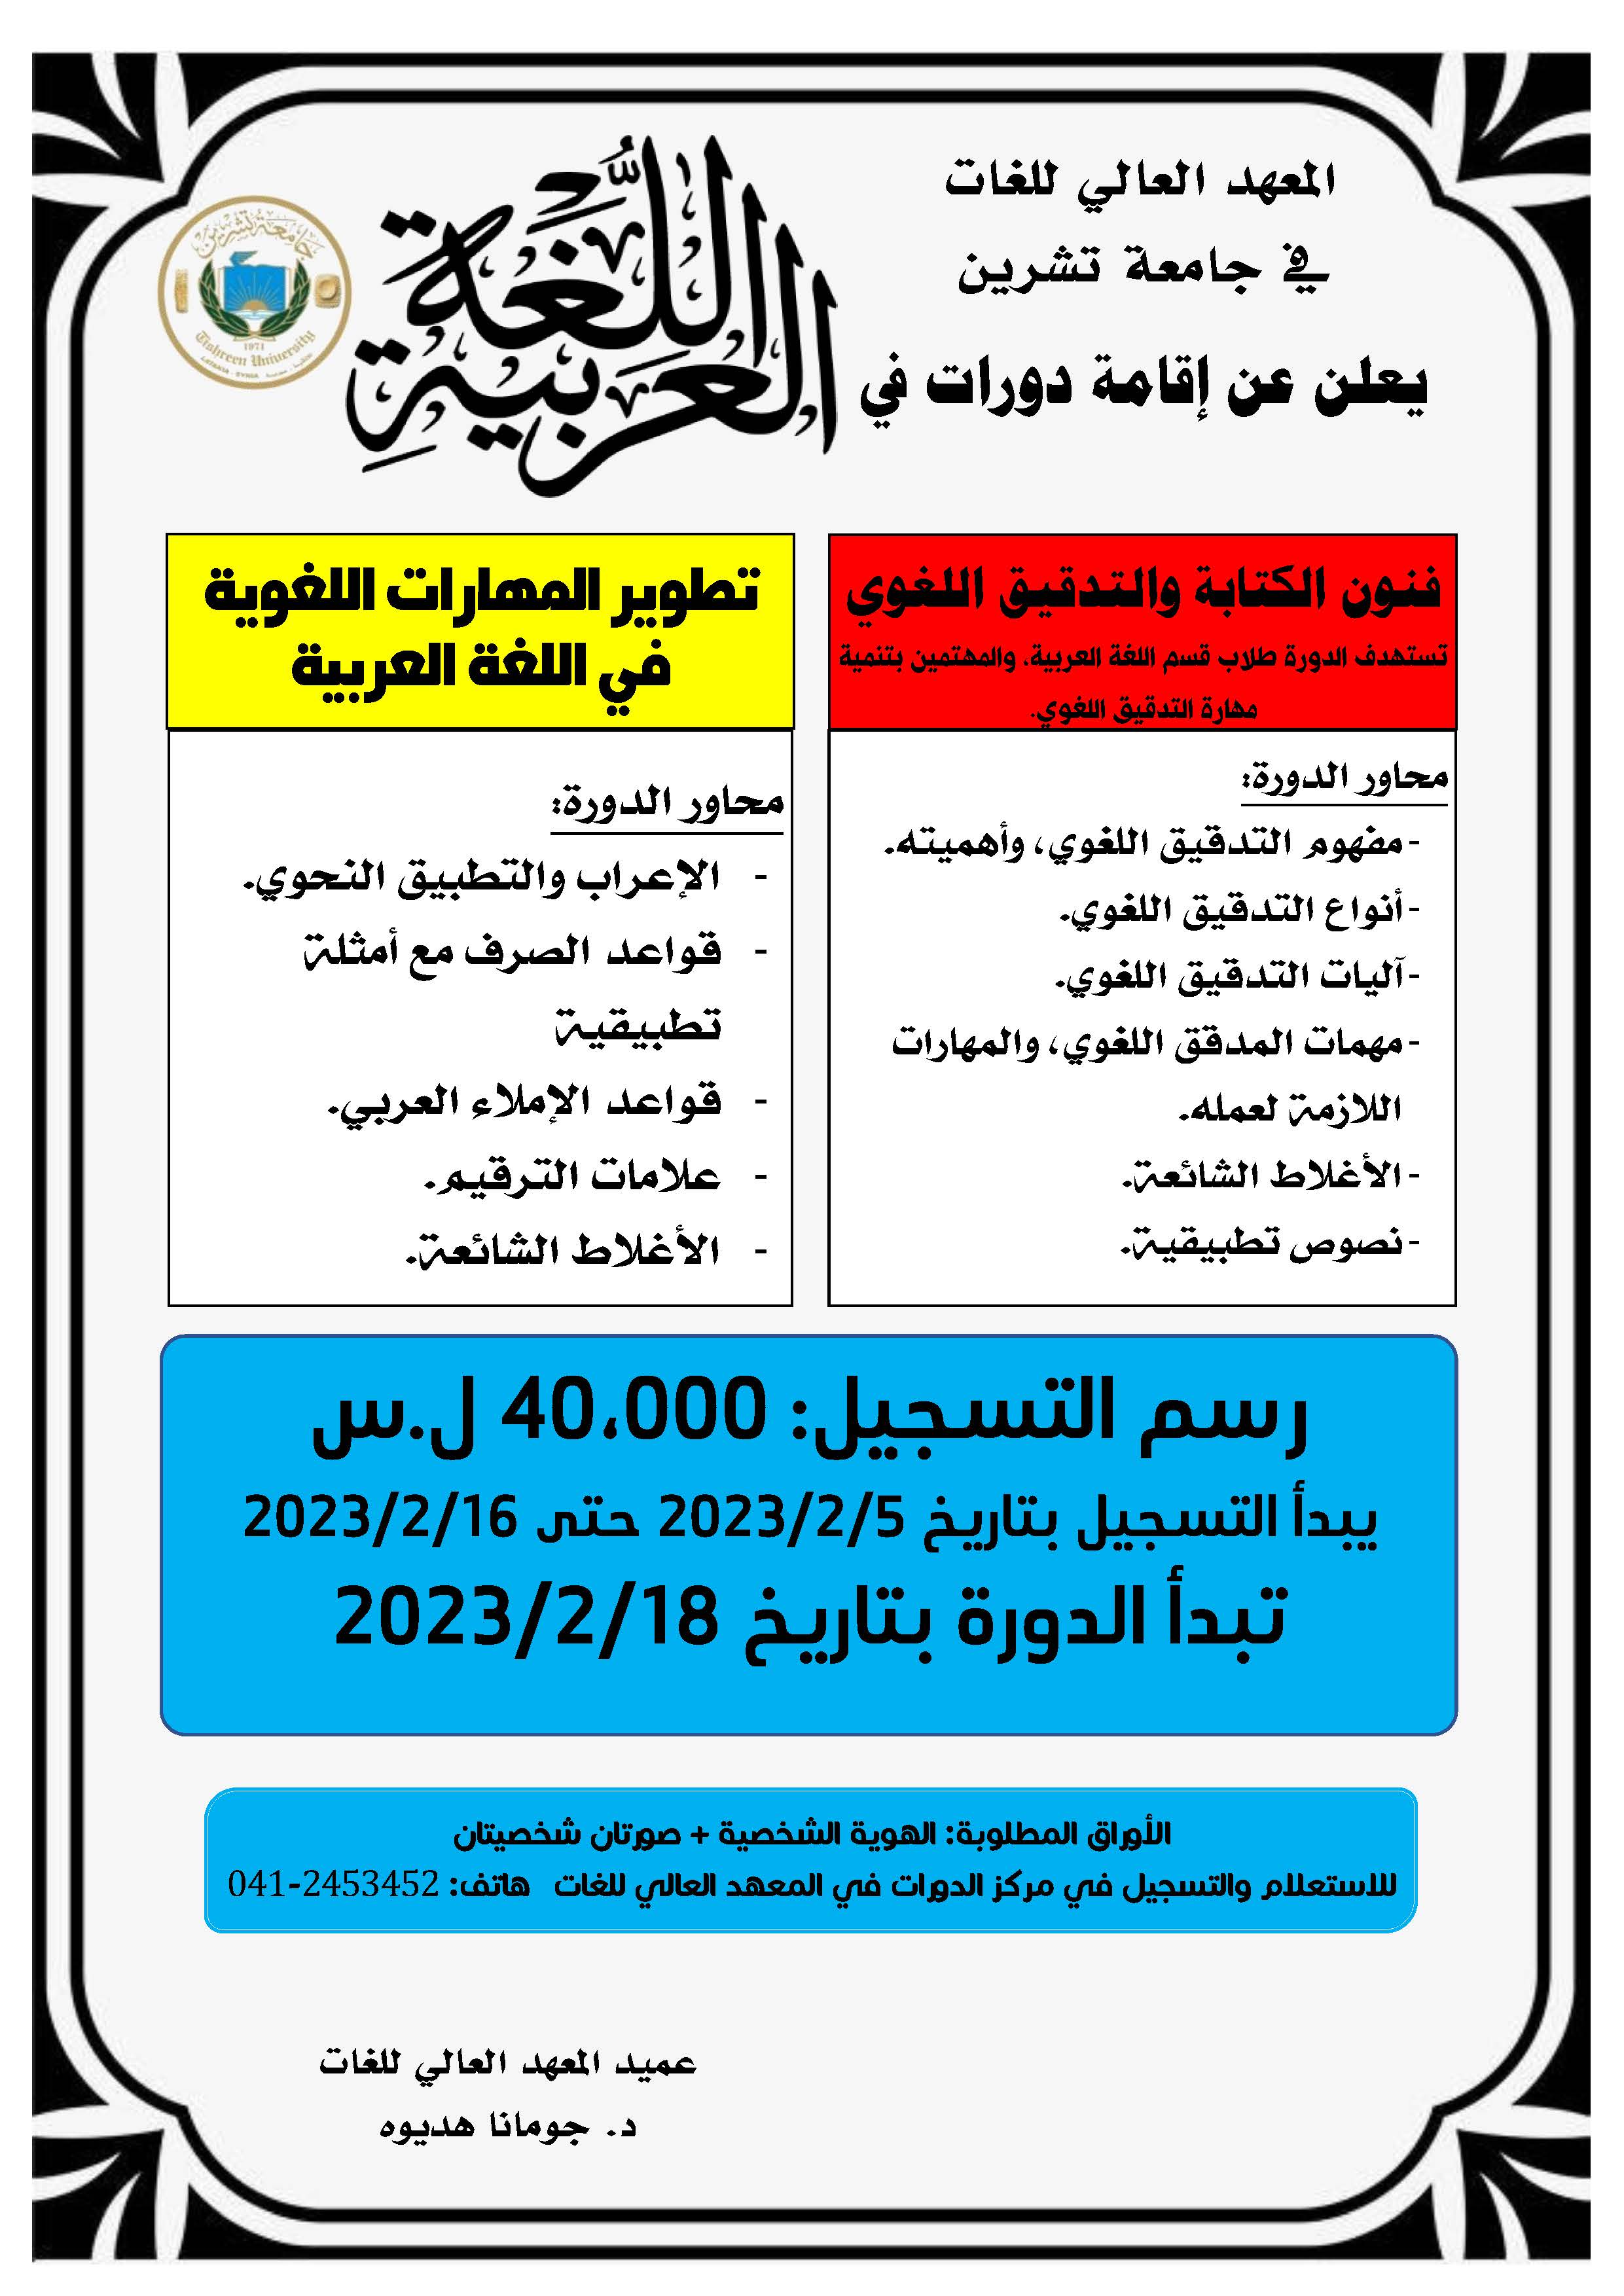 المعهد العالي للغات يعلن إقامة دورات في اللغة العربية تبدء بتاريخ 18-2-2023